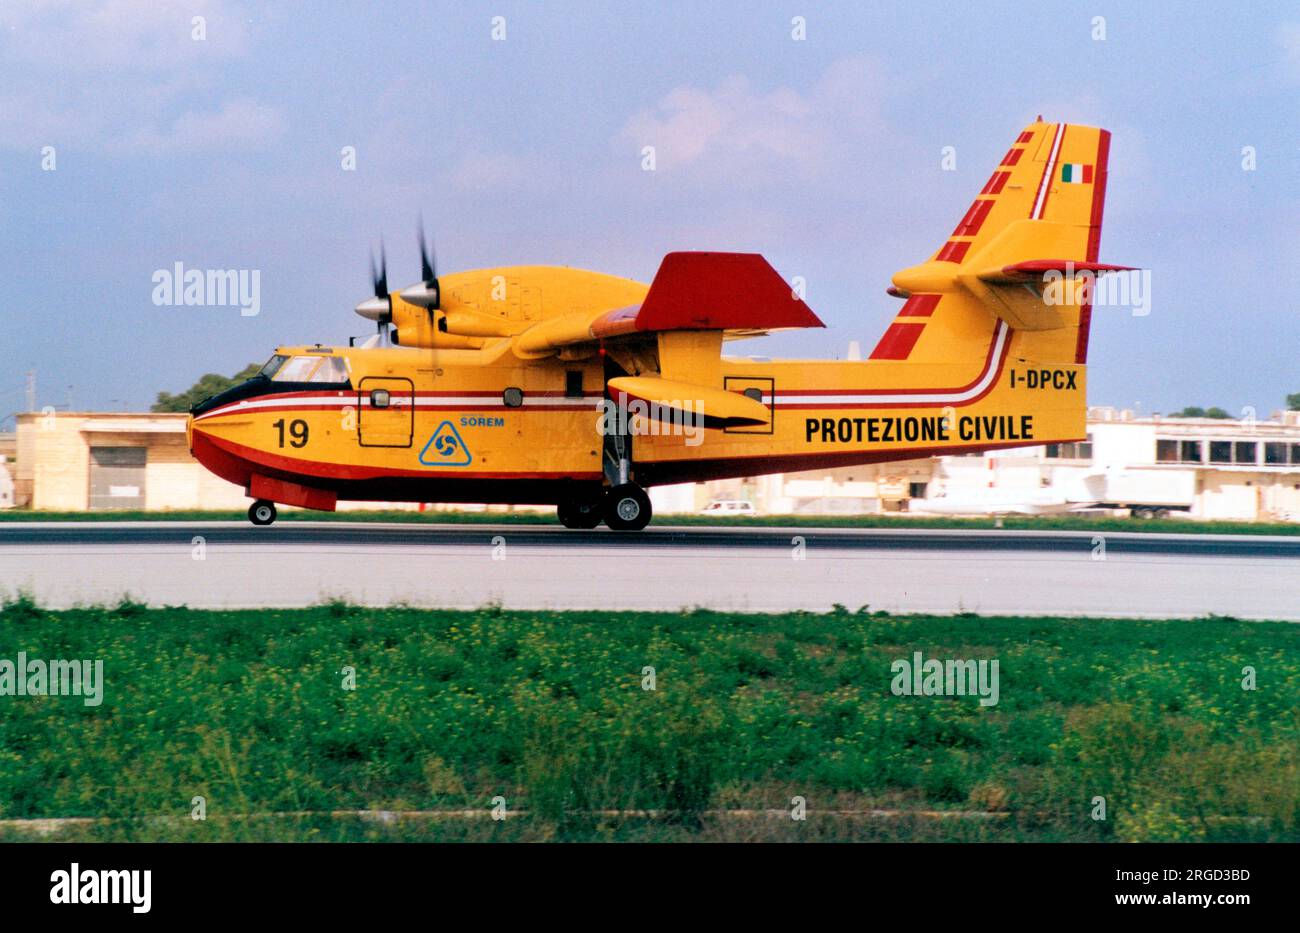 Protezione Civile - Canadair 415-6B11 I-DPCX / 19 (msn 2045). (Protezione Civile - Civil Defence) Stock Photo